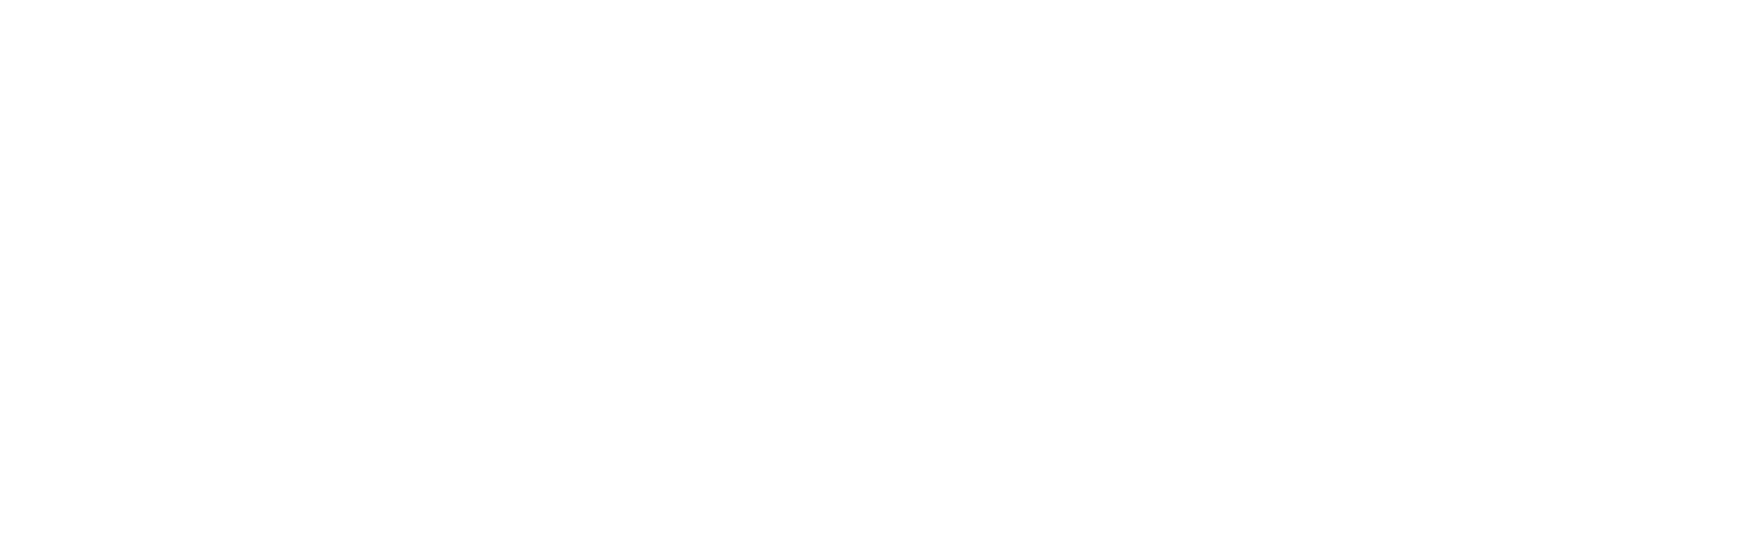 Musashikosugi／躍動の武蔵小杉で叶う、時のゆとり。